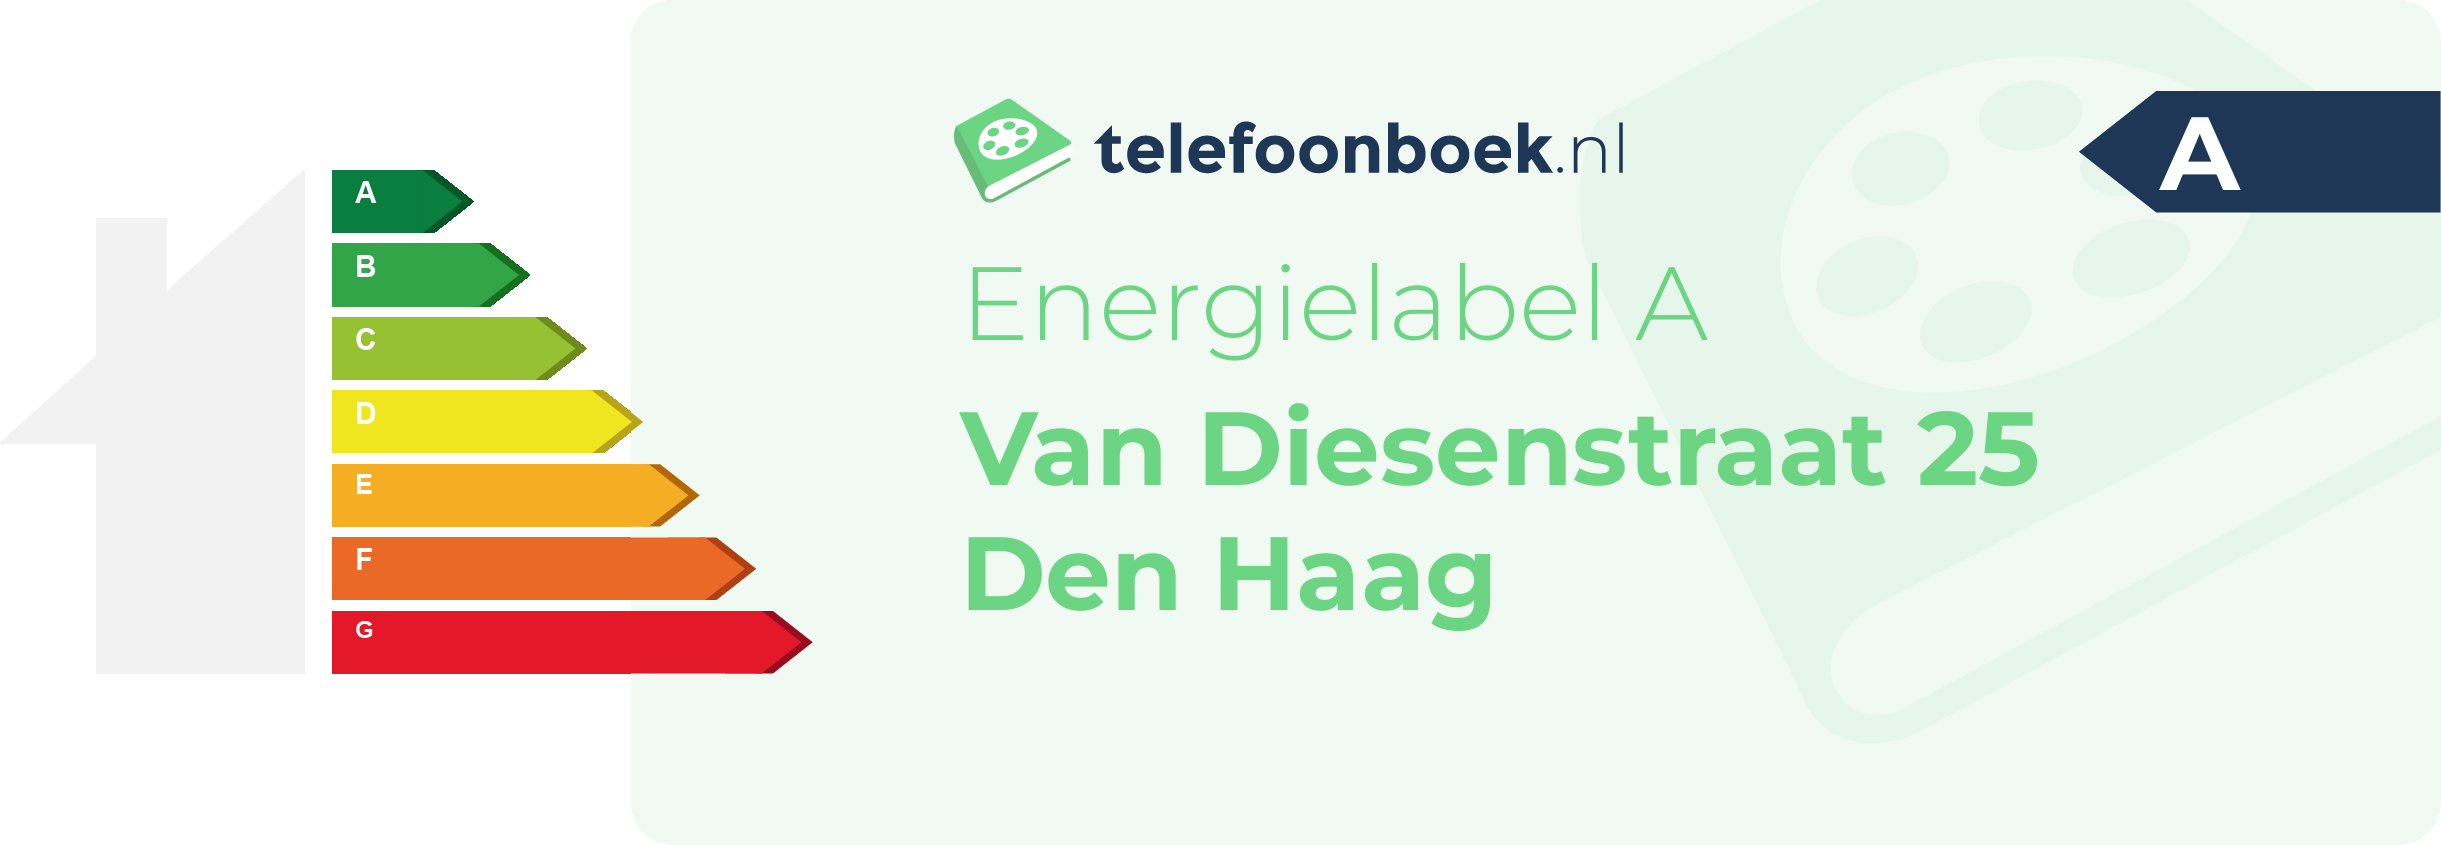 Energielabel Van Diesenstraat 25 Den Haag